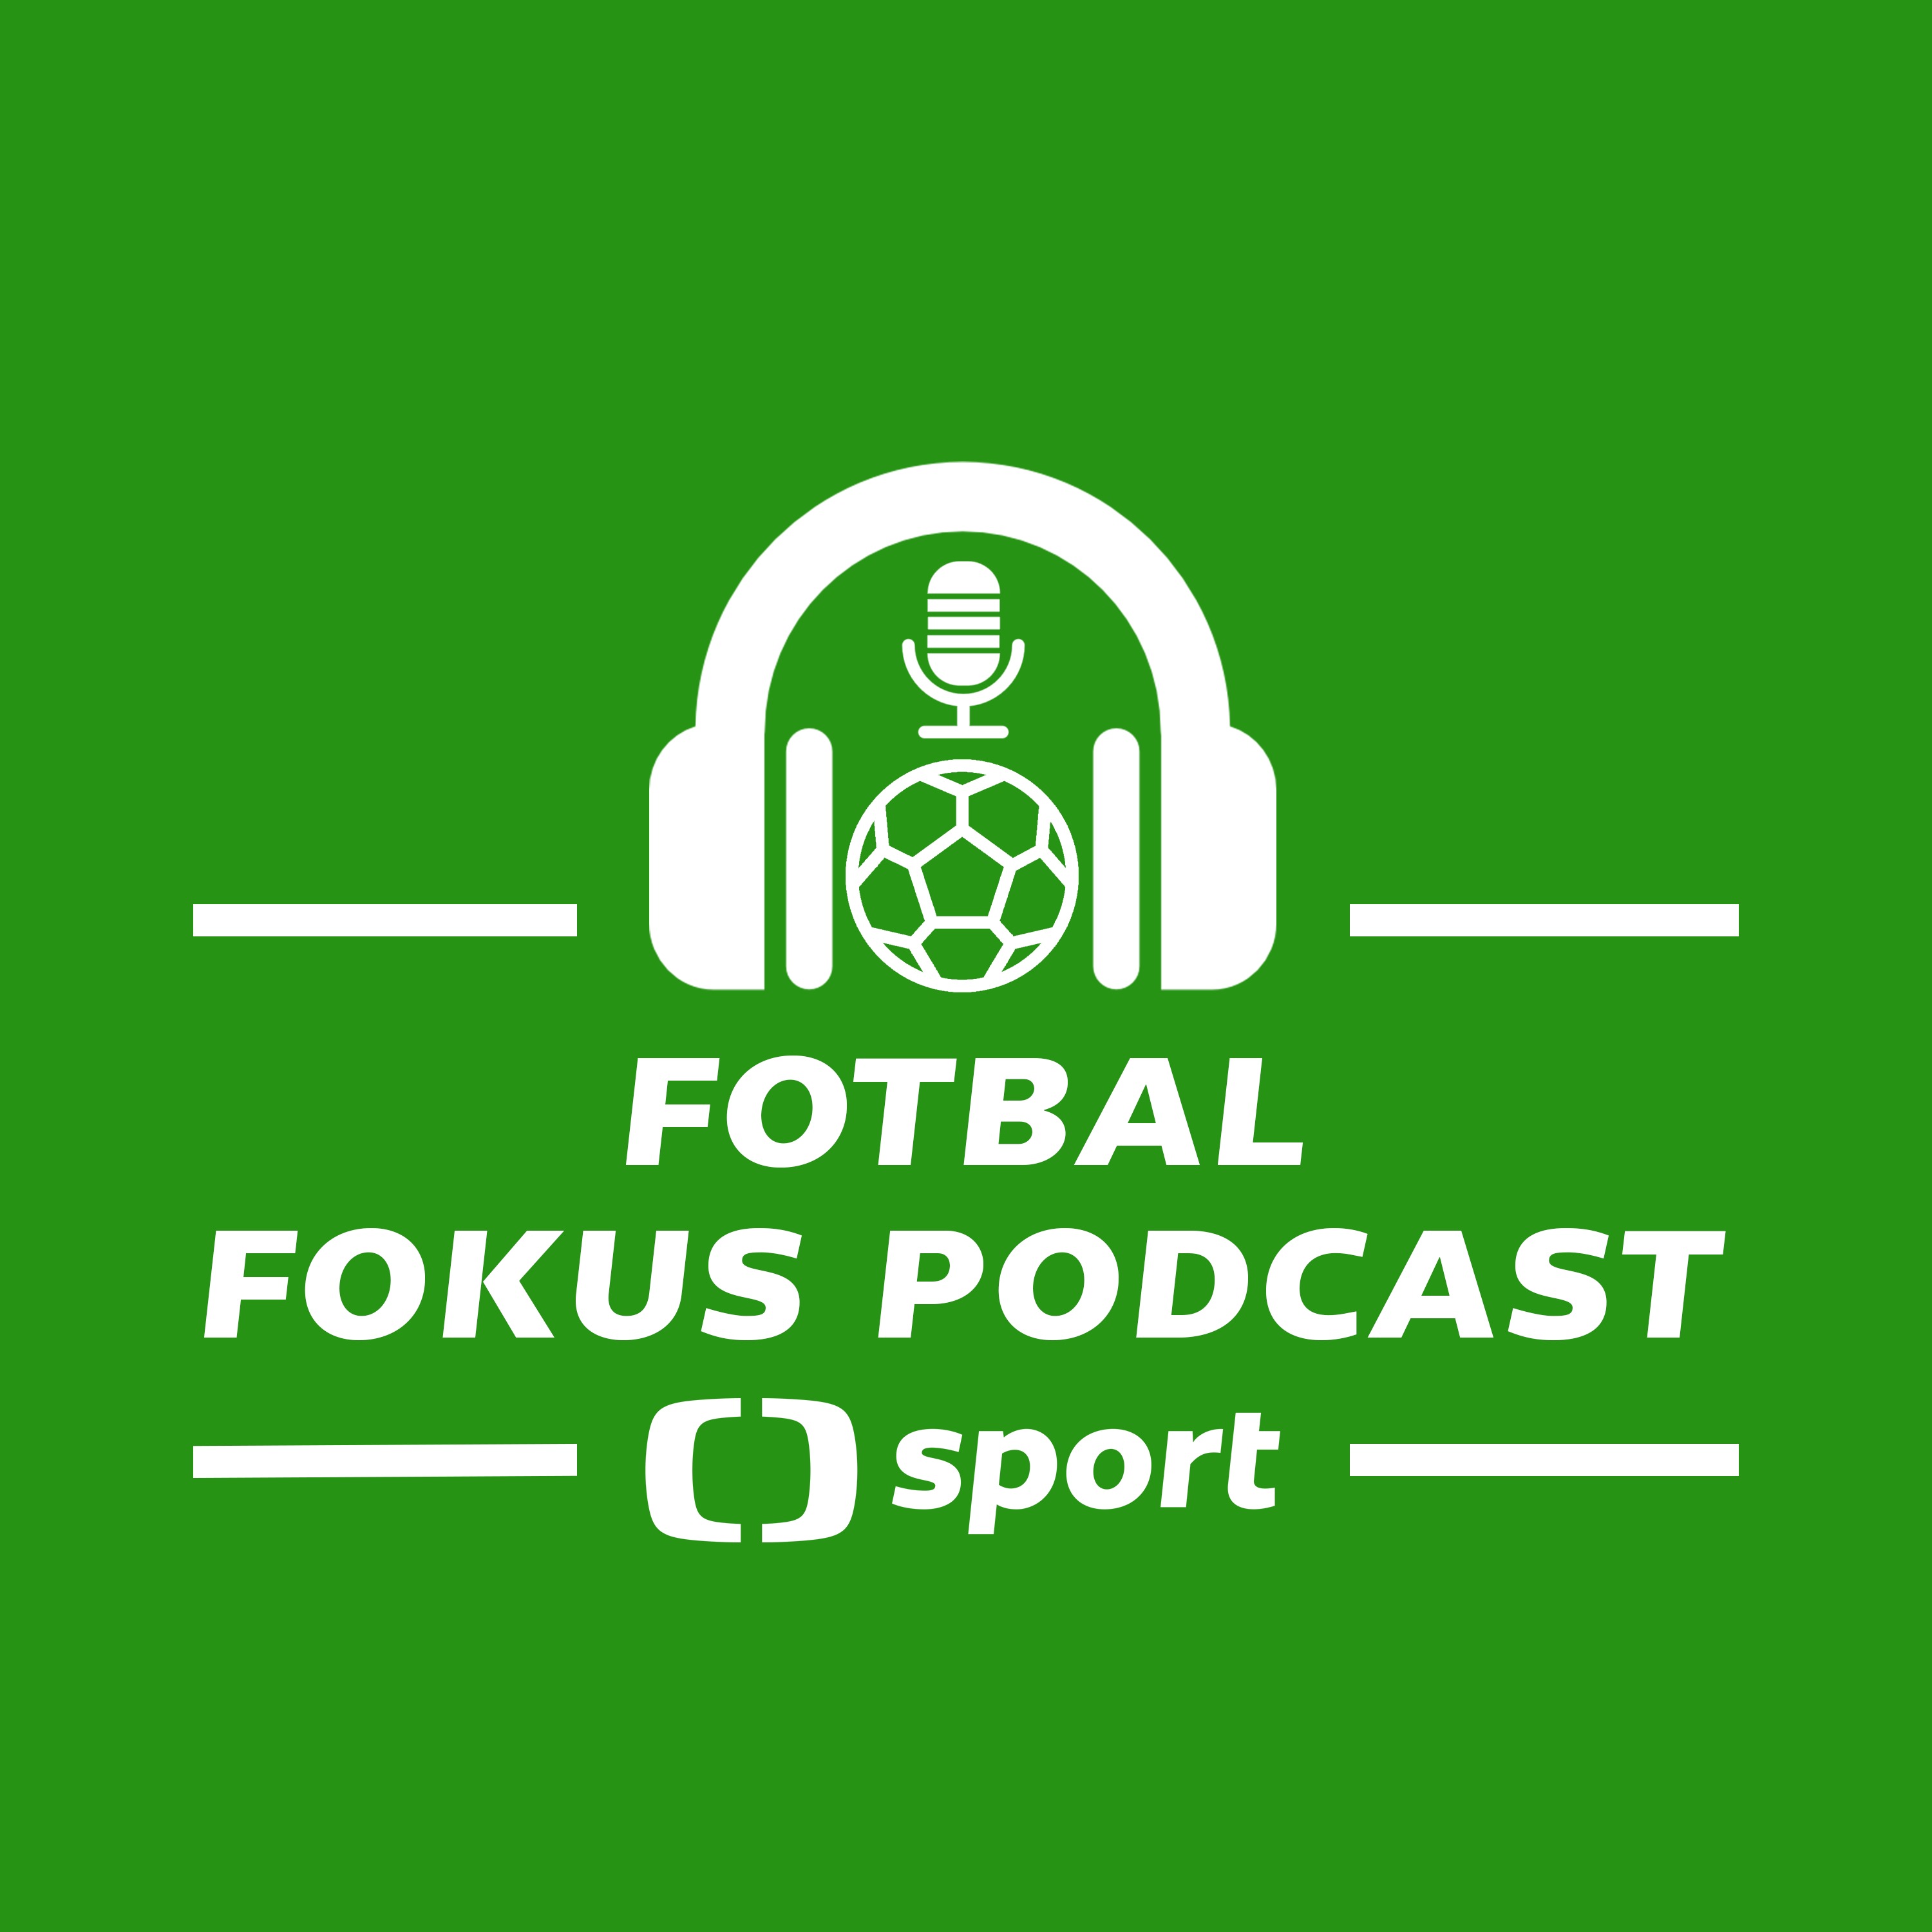 Fotbal fokus podcast: Hložek v Leverkusenu. Změny ve Slavii a finále LM